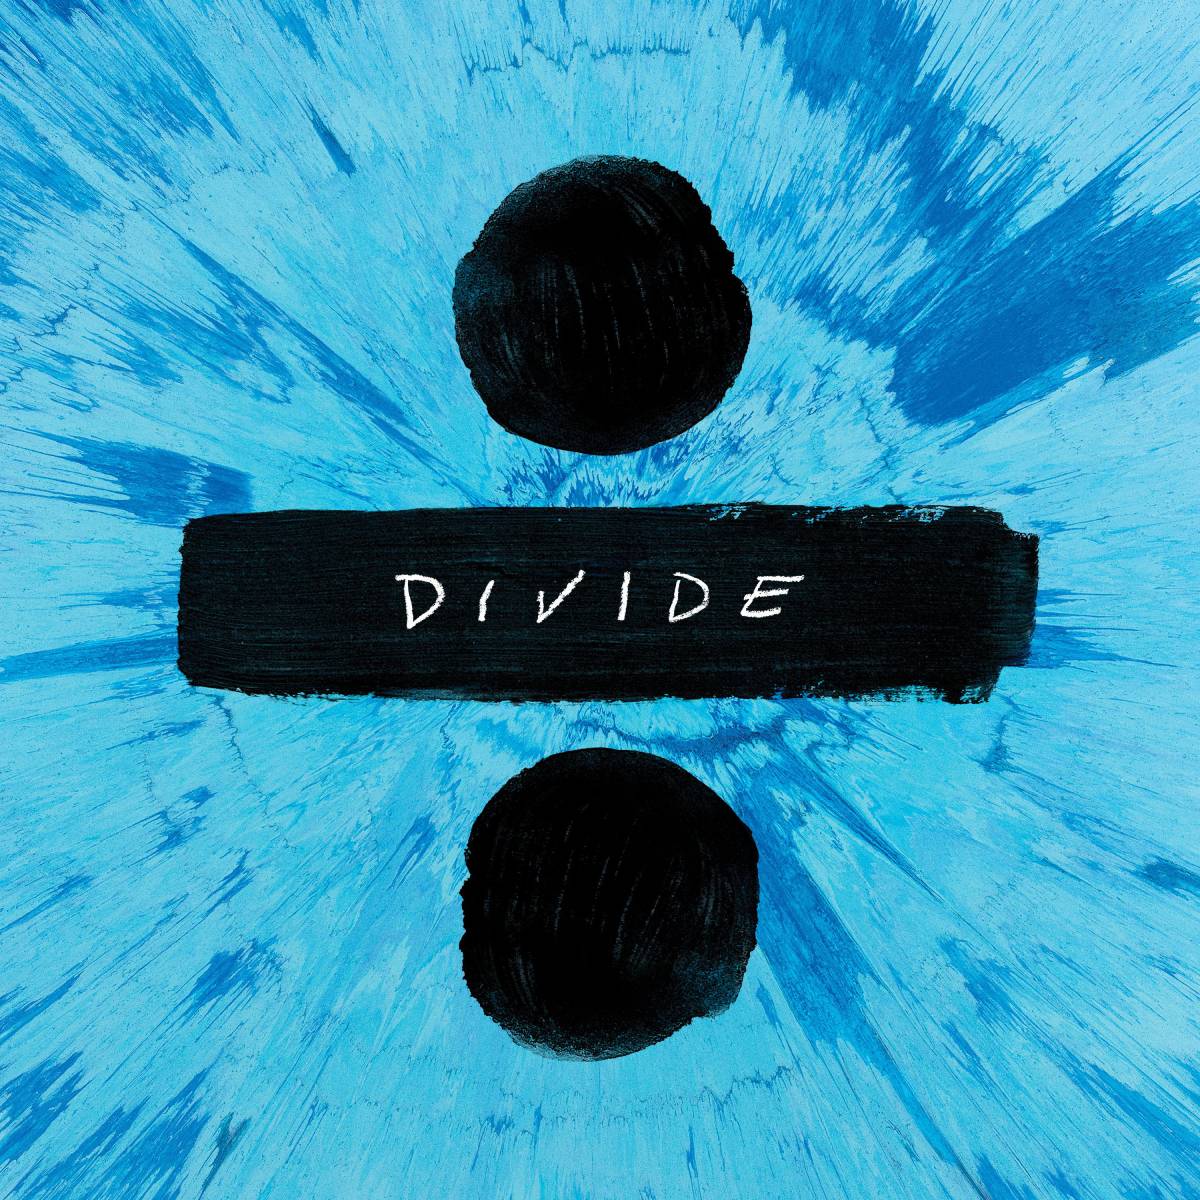 Divide（第三张 Ed Sheeran 专辑）